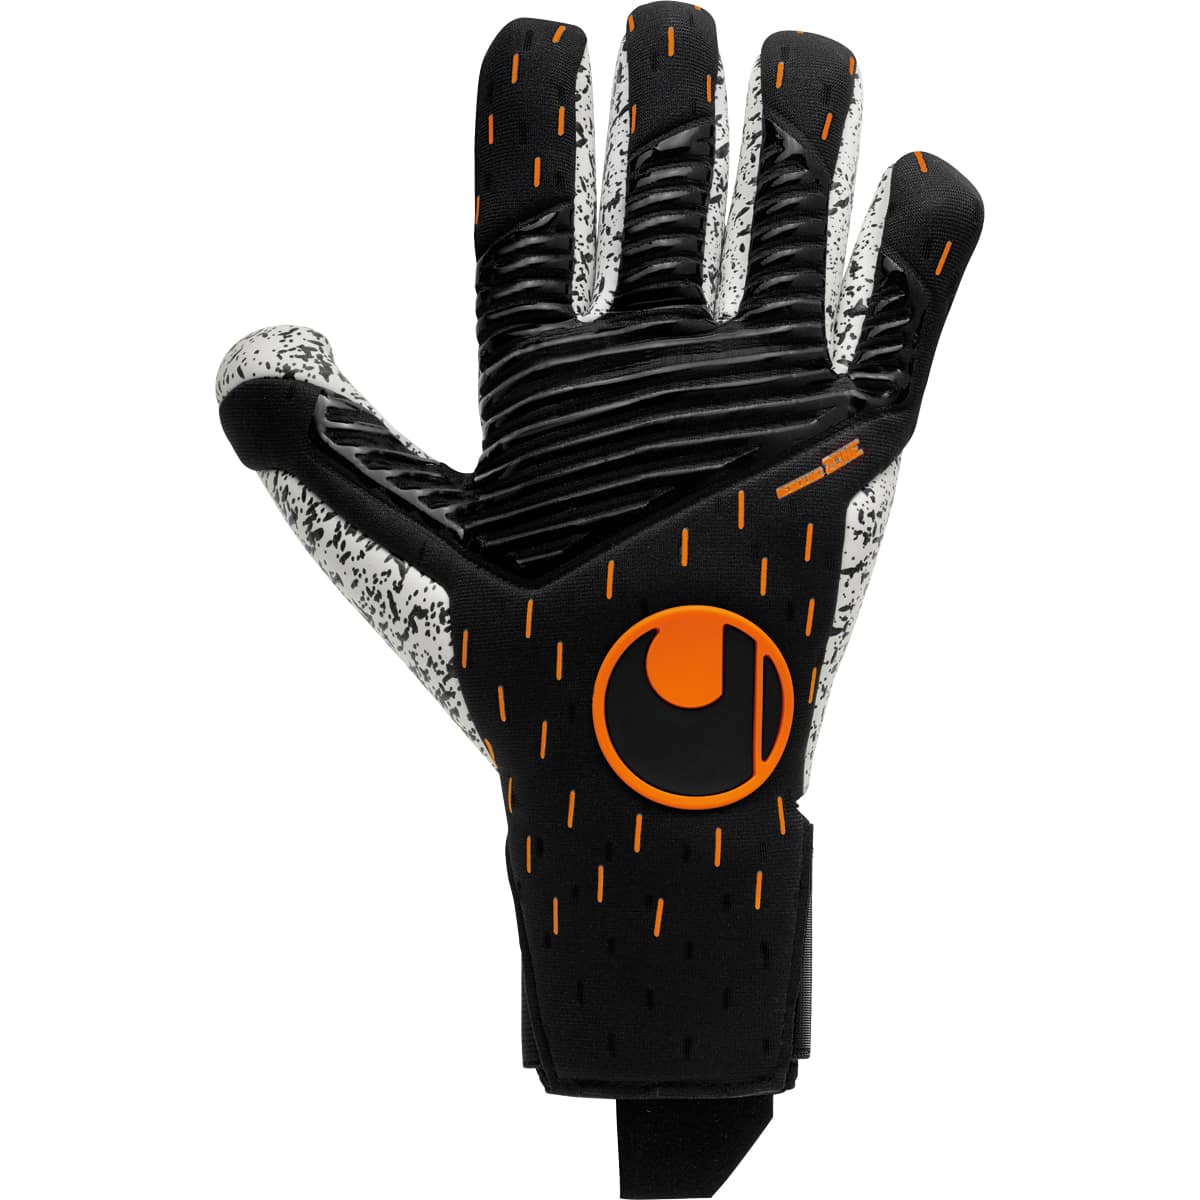 Uhlsport Torwarthandschuh Speed Contact Supergrip+ Finger Surround schwarz/weiß/fluo orange